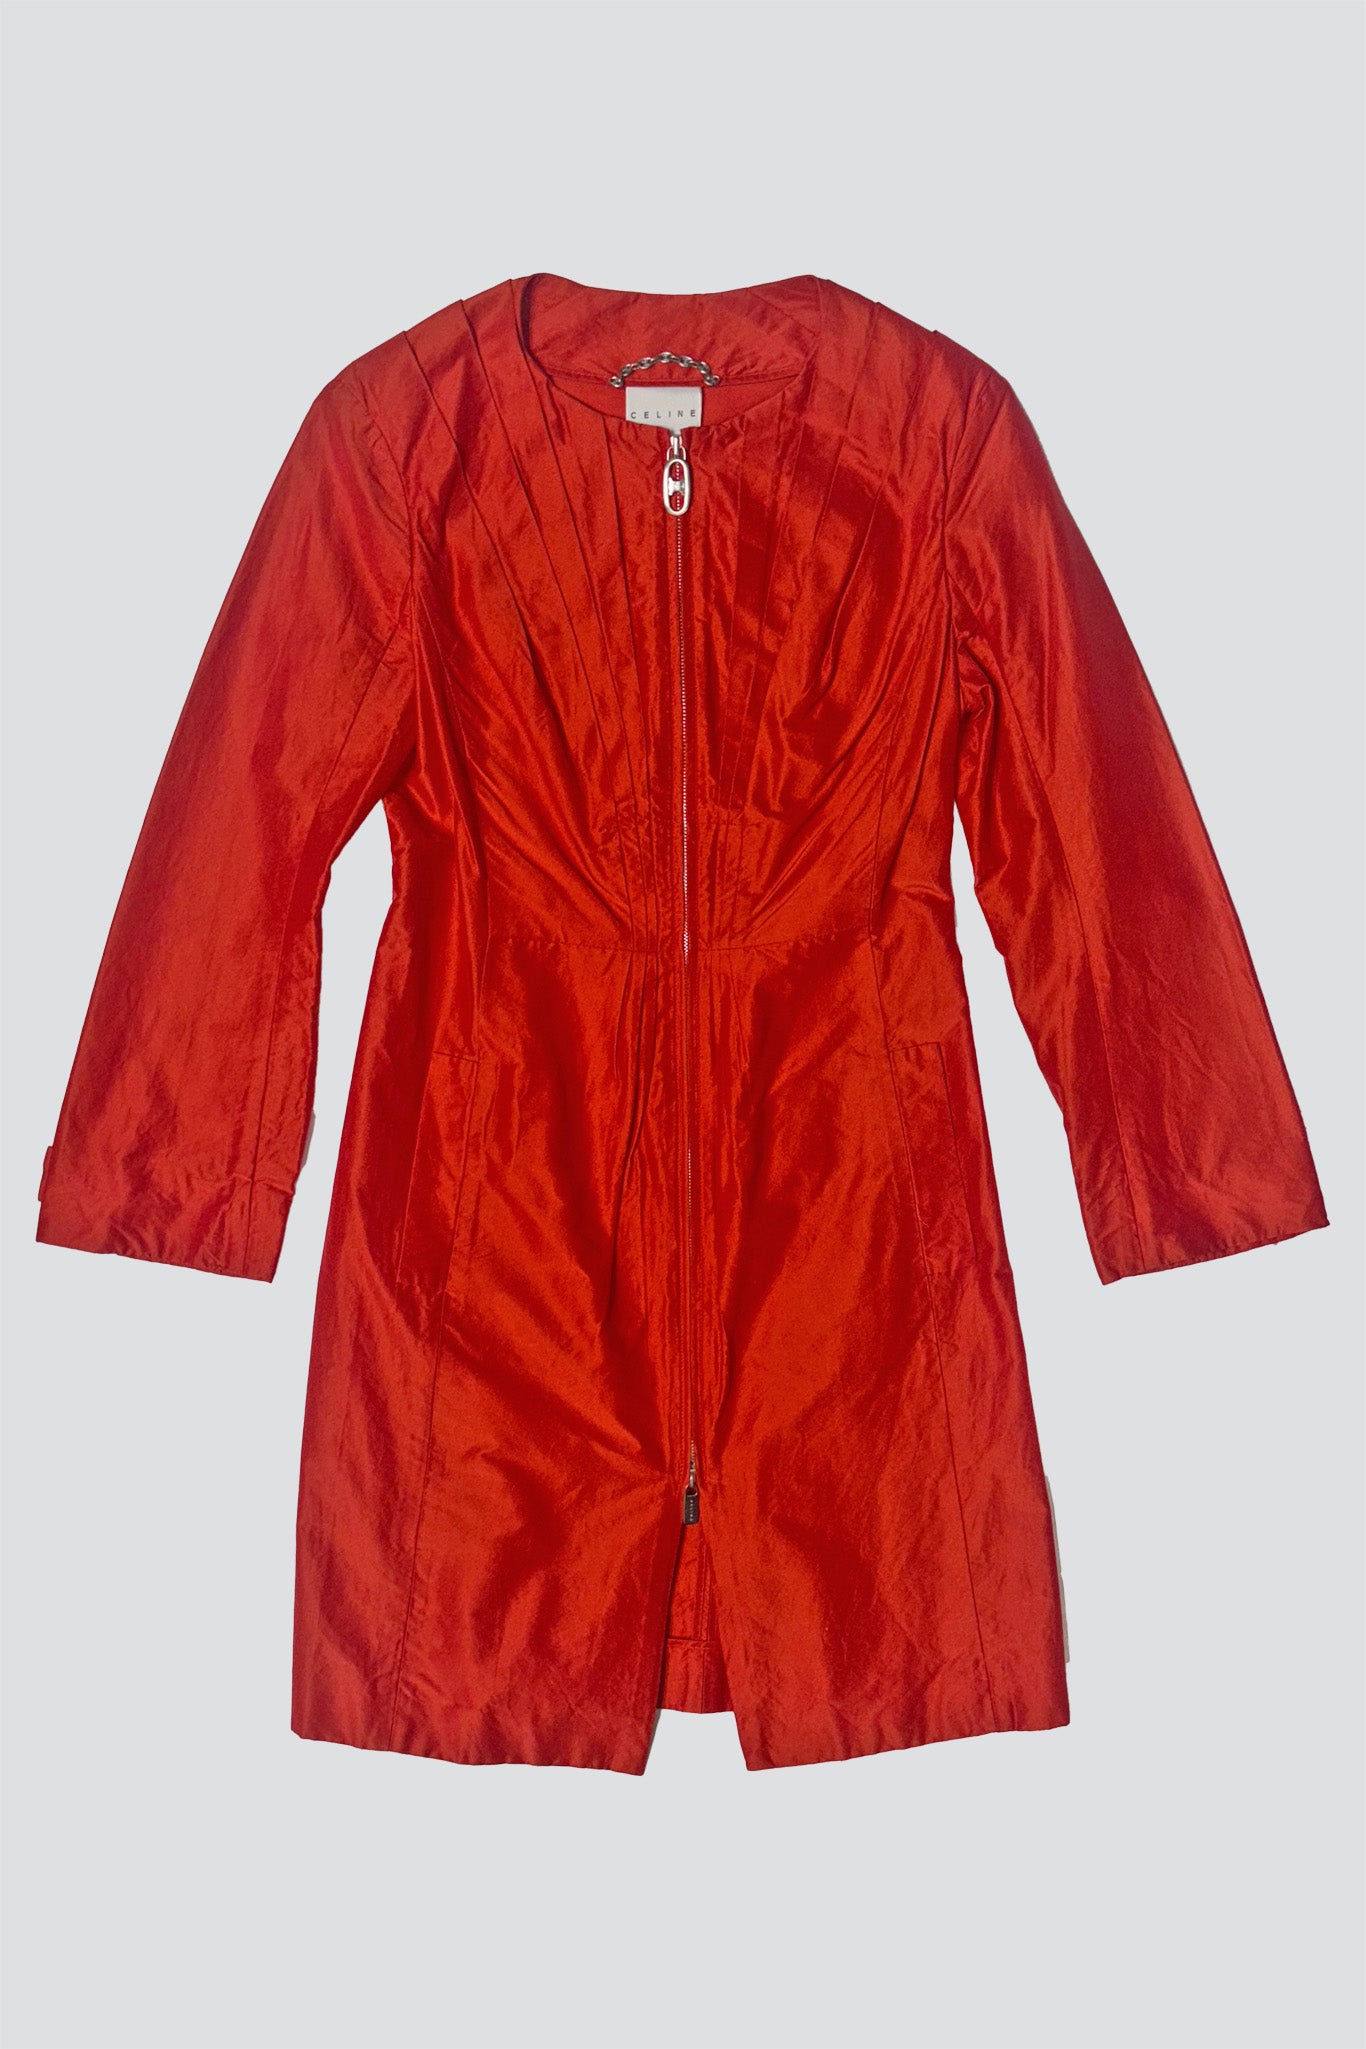 Celine Hot Red Zip Jacket